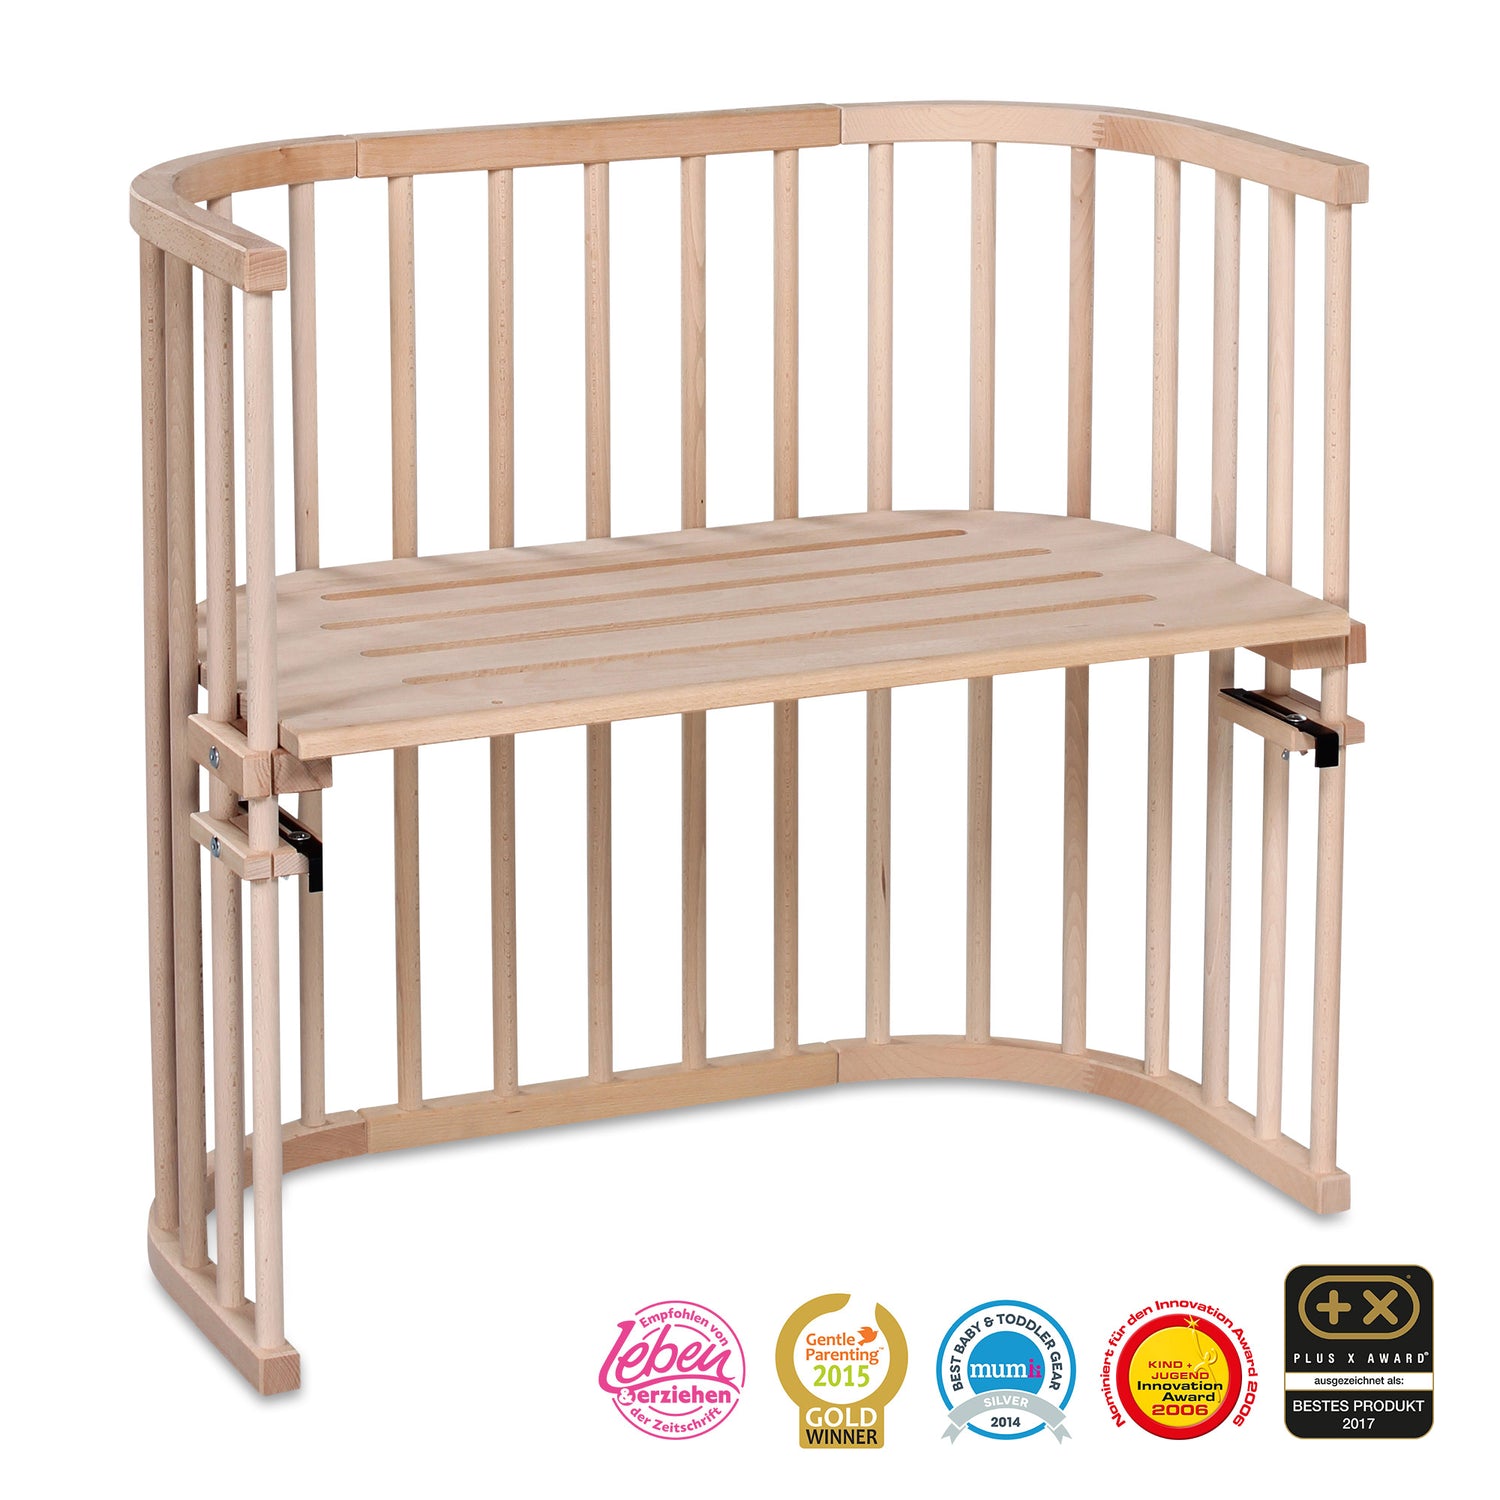 Kategoriebild der Kategorie 'Möbel' im Onlineshop von dasMikruli - Dein Shop für Baby Erstausstattung